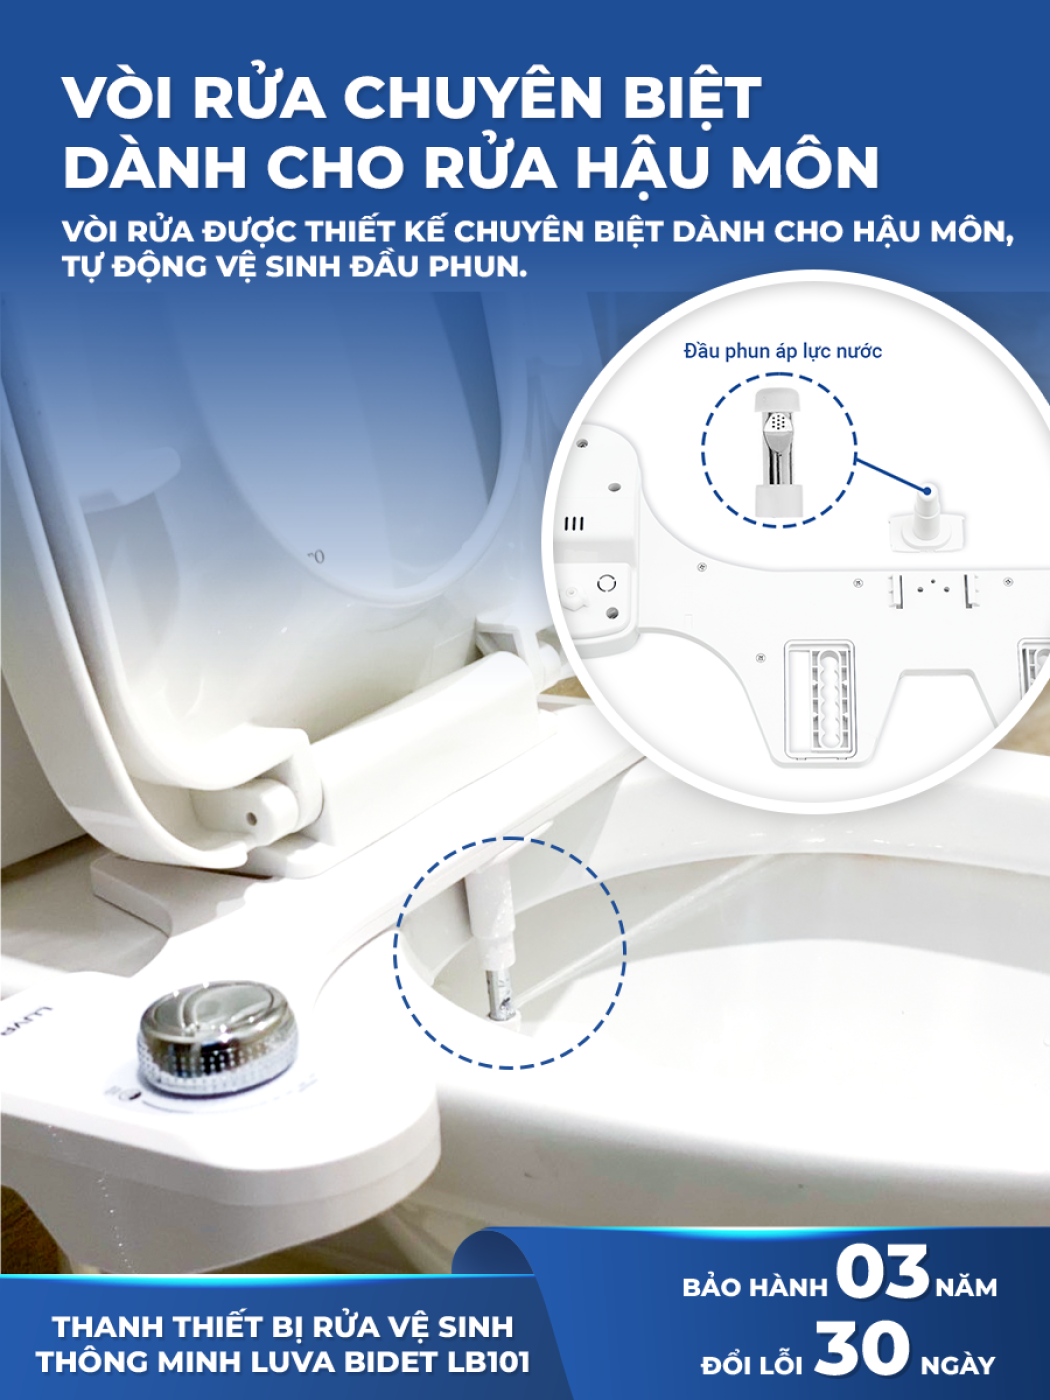 Vòi rửa vệ sinh thông minh LUVA BIDET LB101, BH 3 năm, đổi lỗi 100 ngày